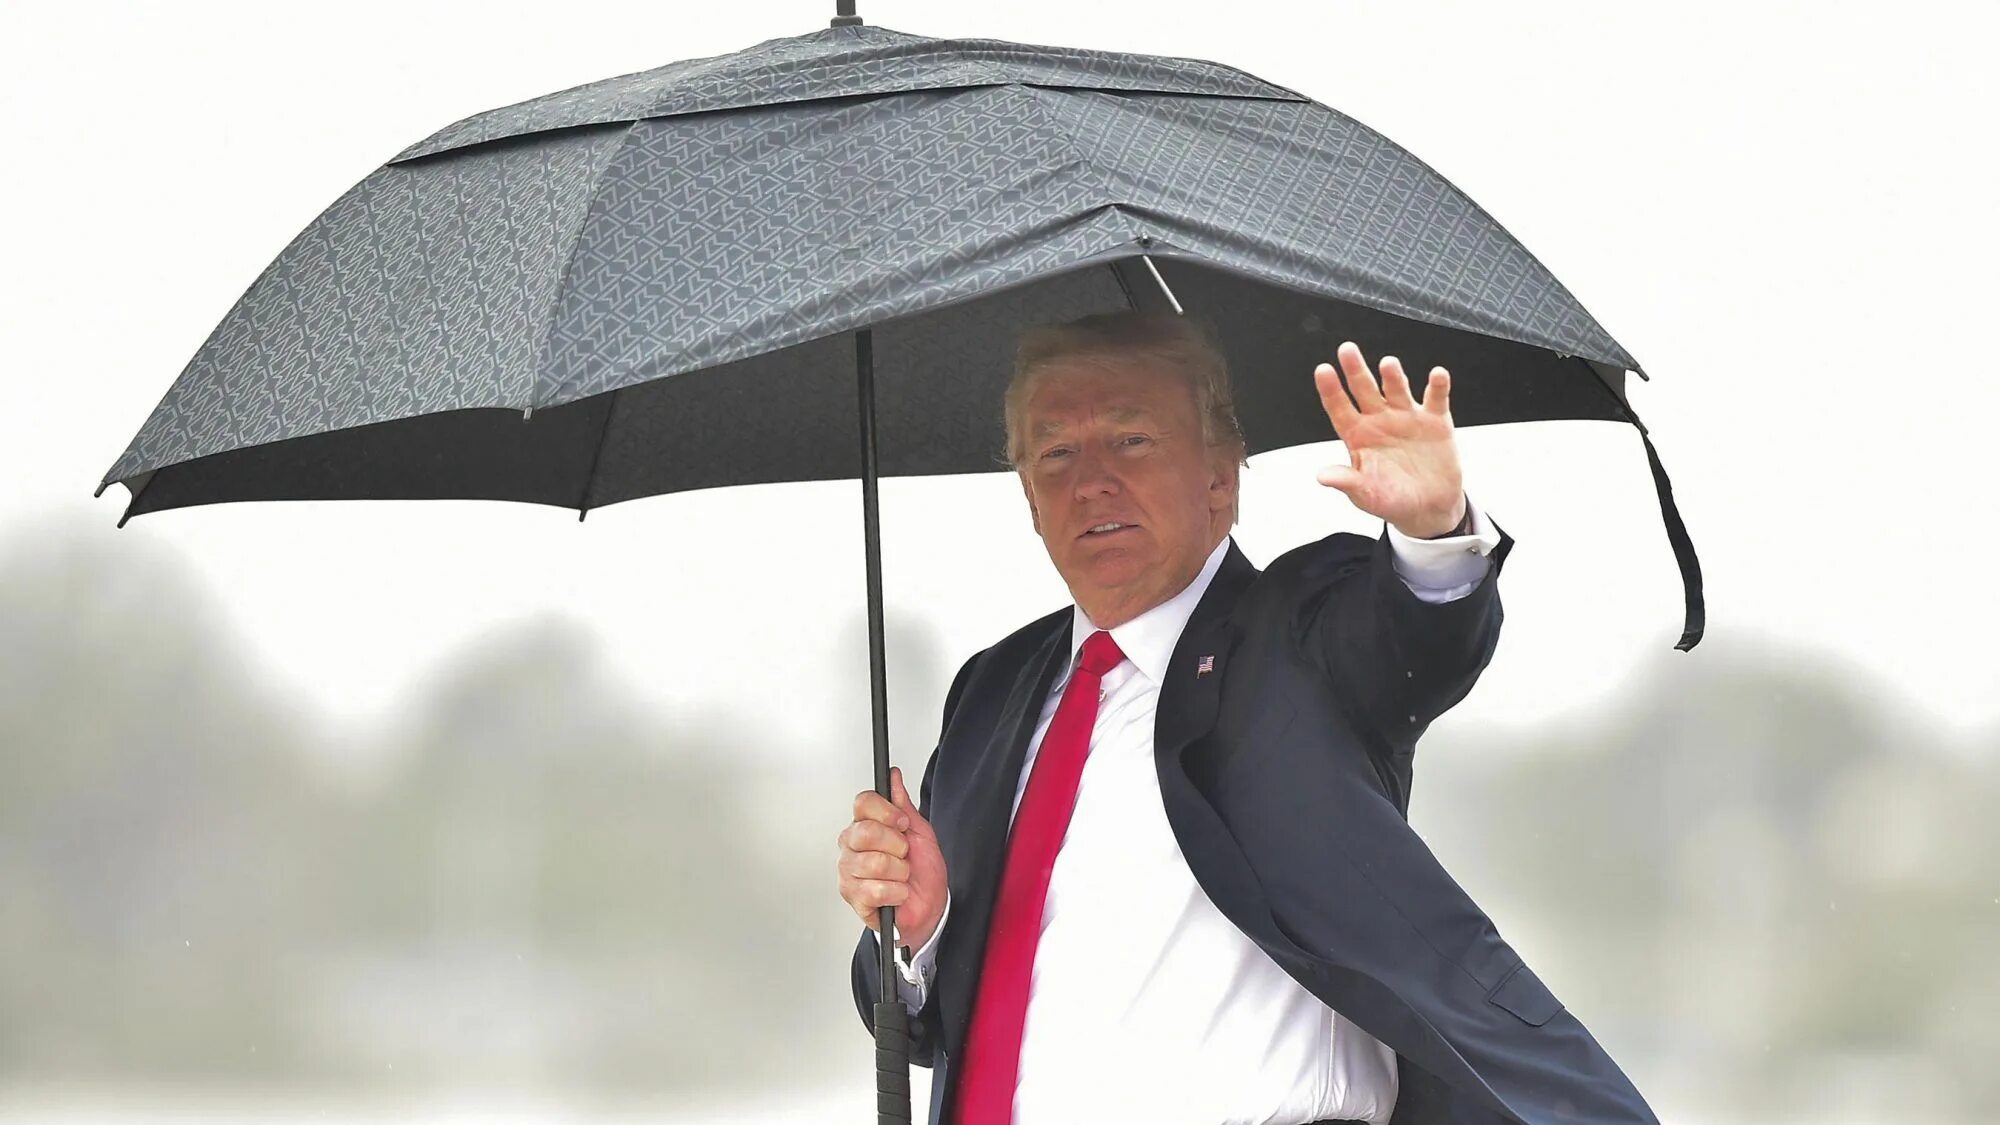 Роль зонтика. Держит зонтик. Человек с зонтиком. Трамп с зонтом.